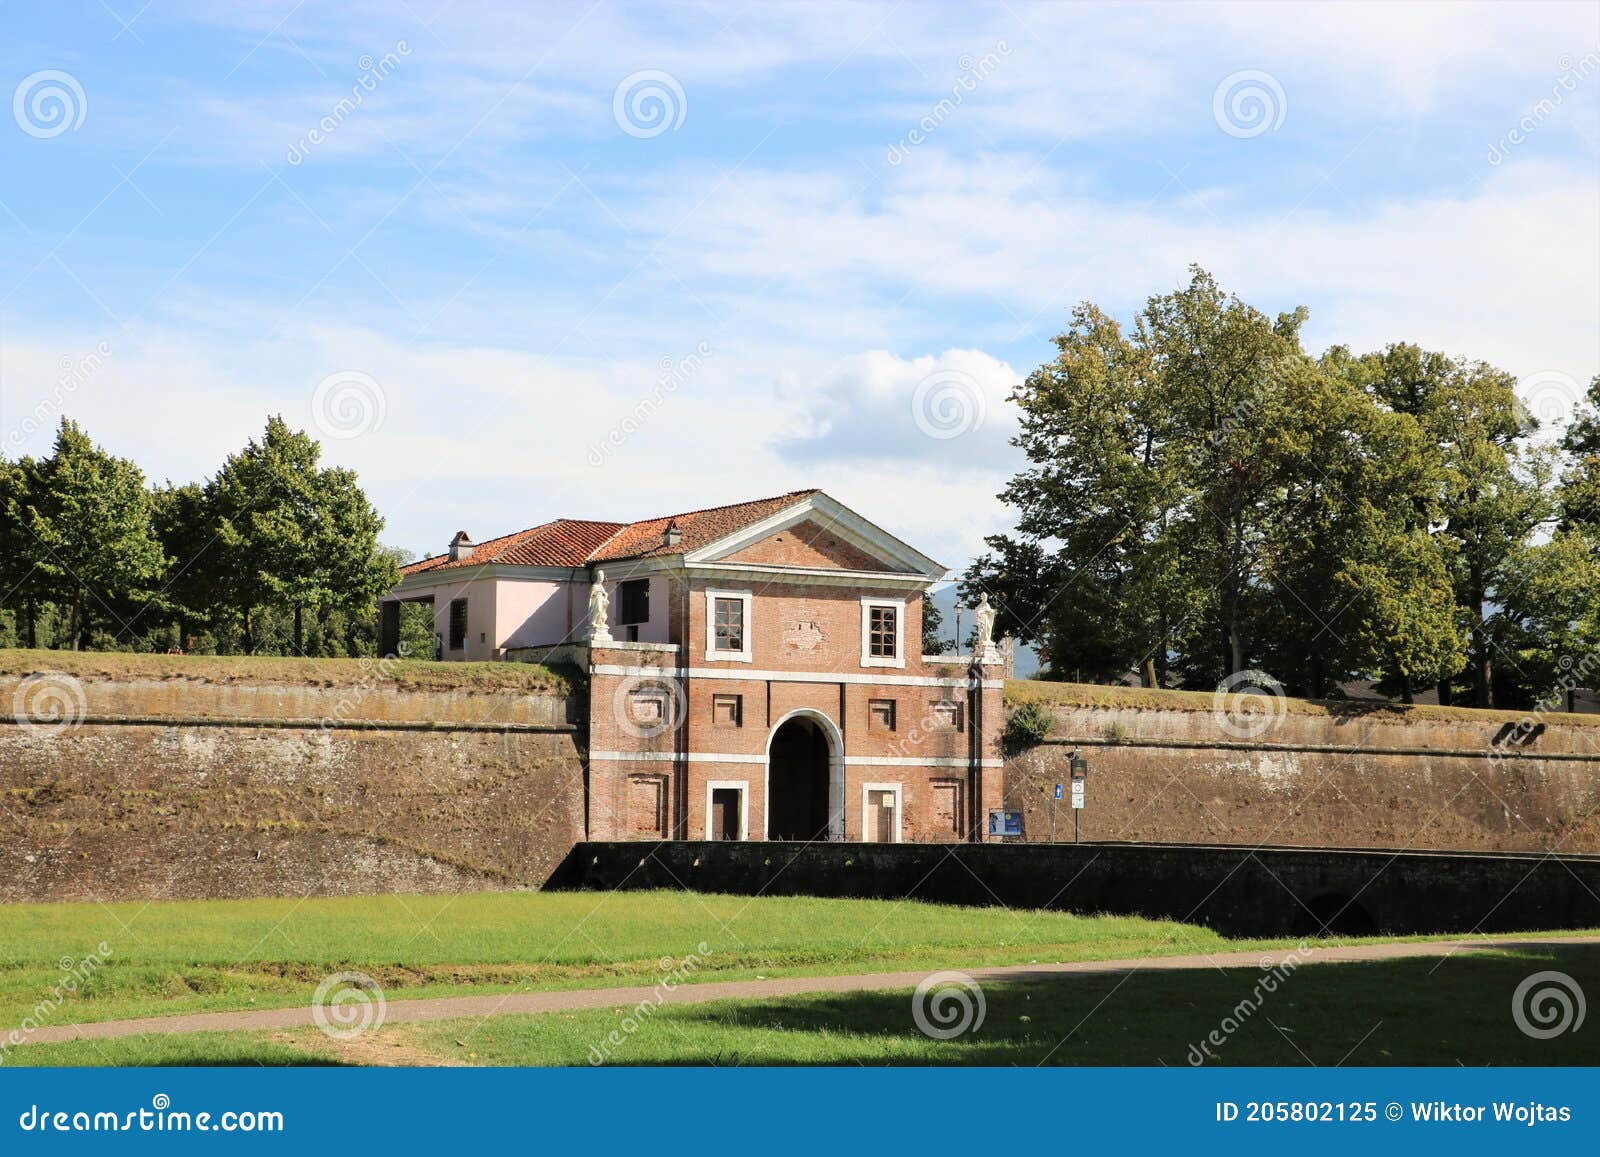 Porta San Donato - City Walls of Lucca Tuscany, Italy Stock Image ...